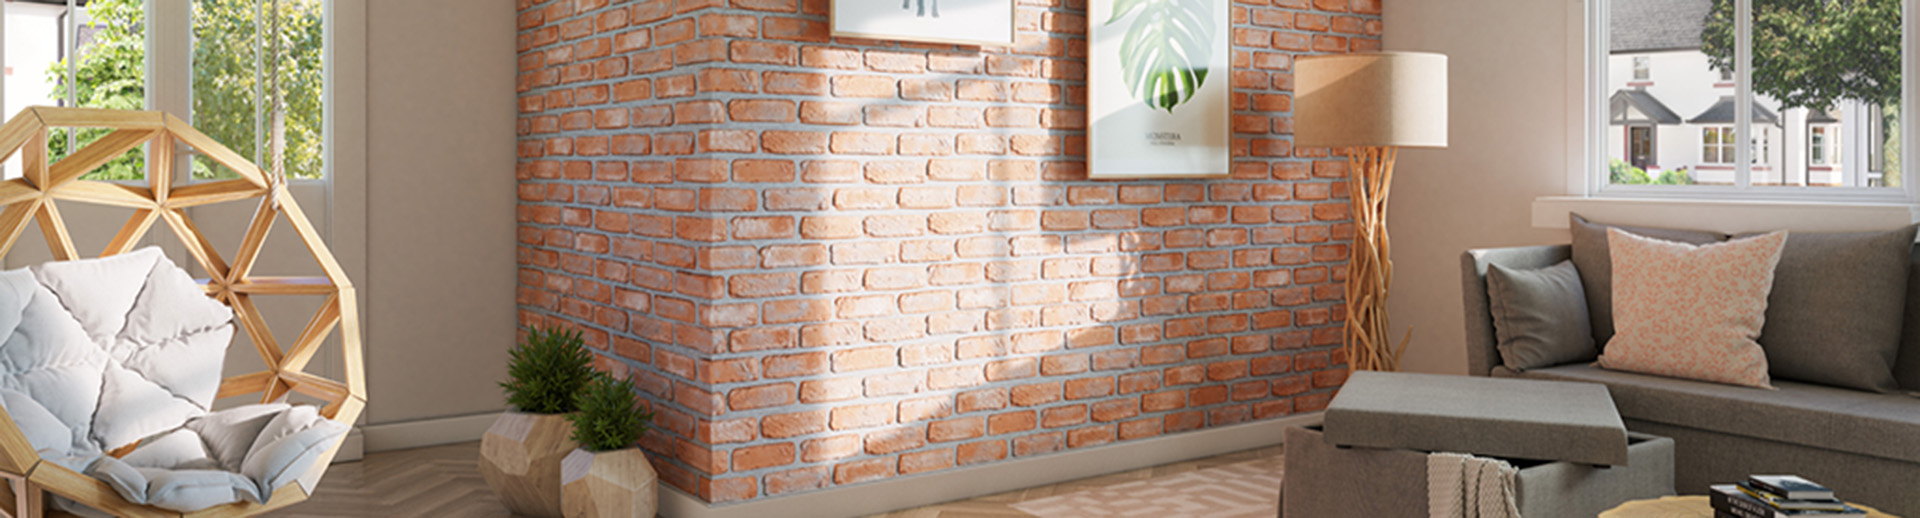 Imitacja cegły na ścianie w nowoczesnym wnętrzu